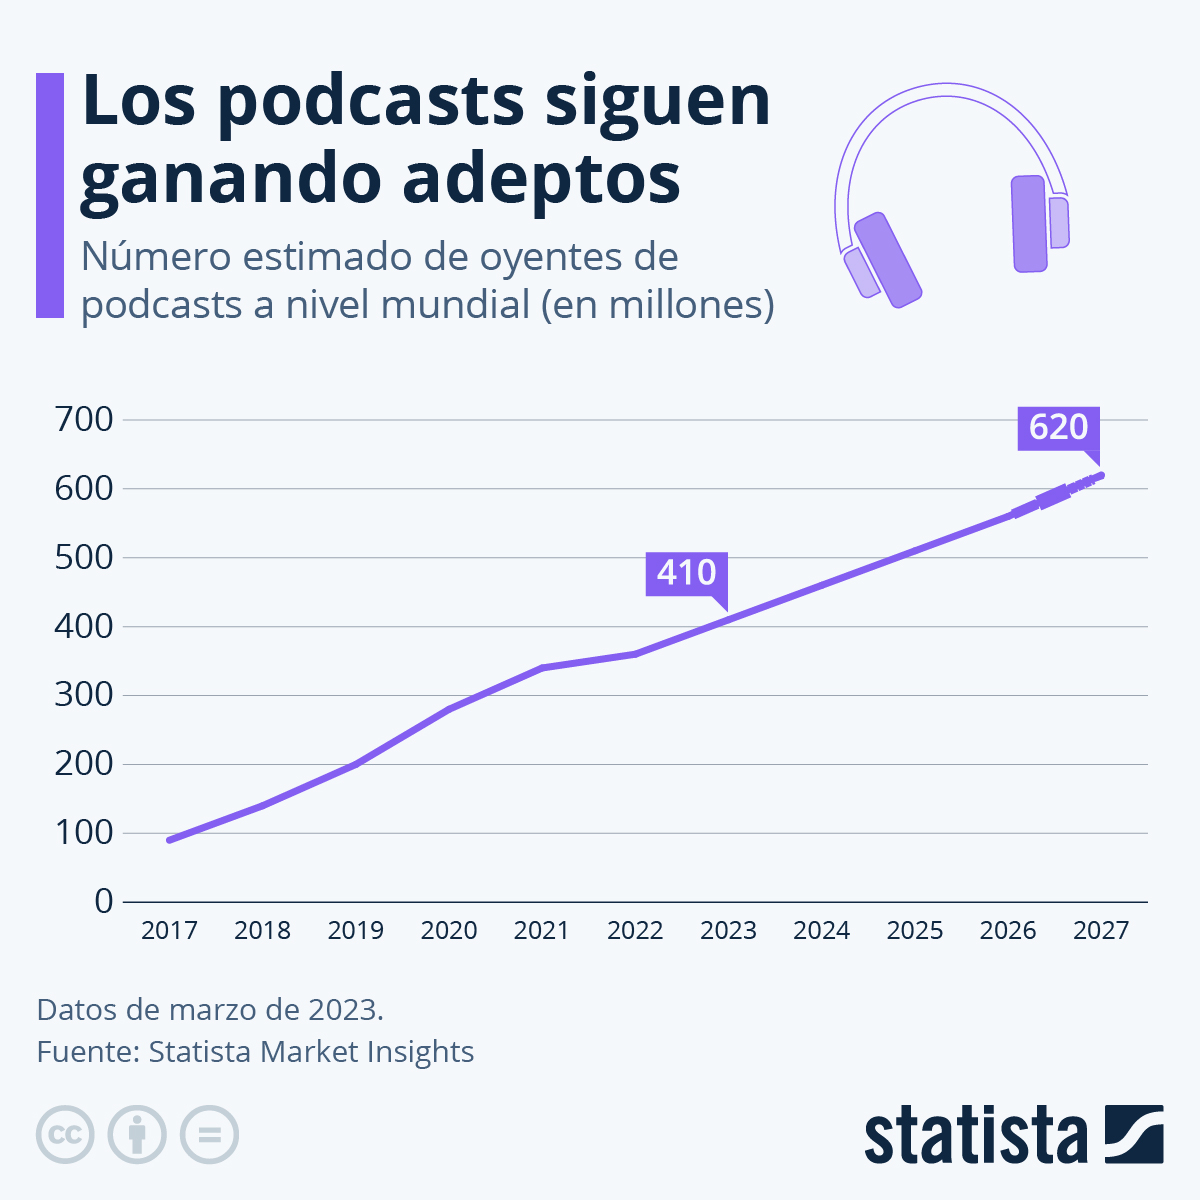 Los podcasts siguen ganando adeptos